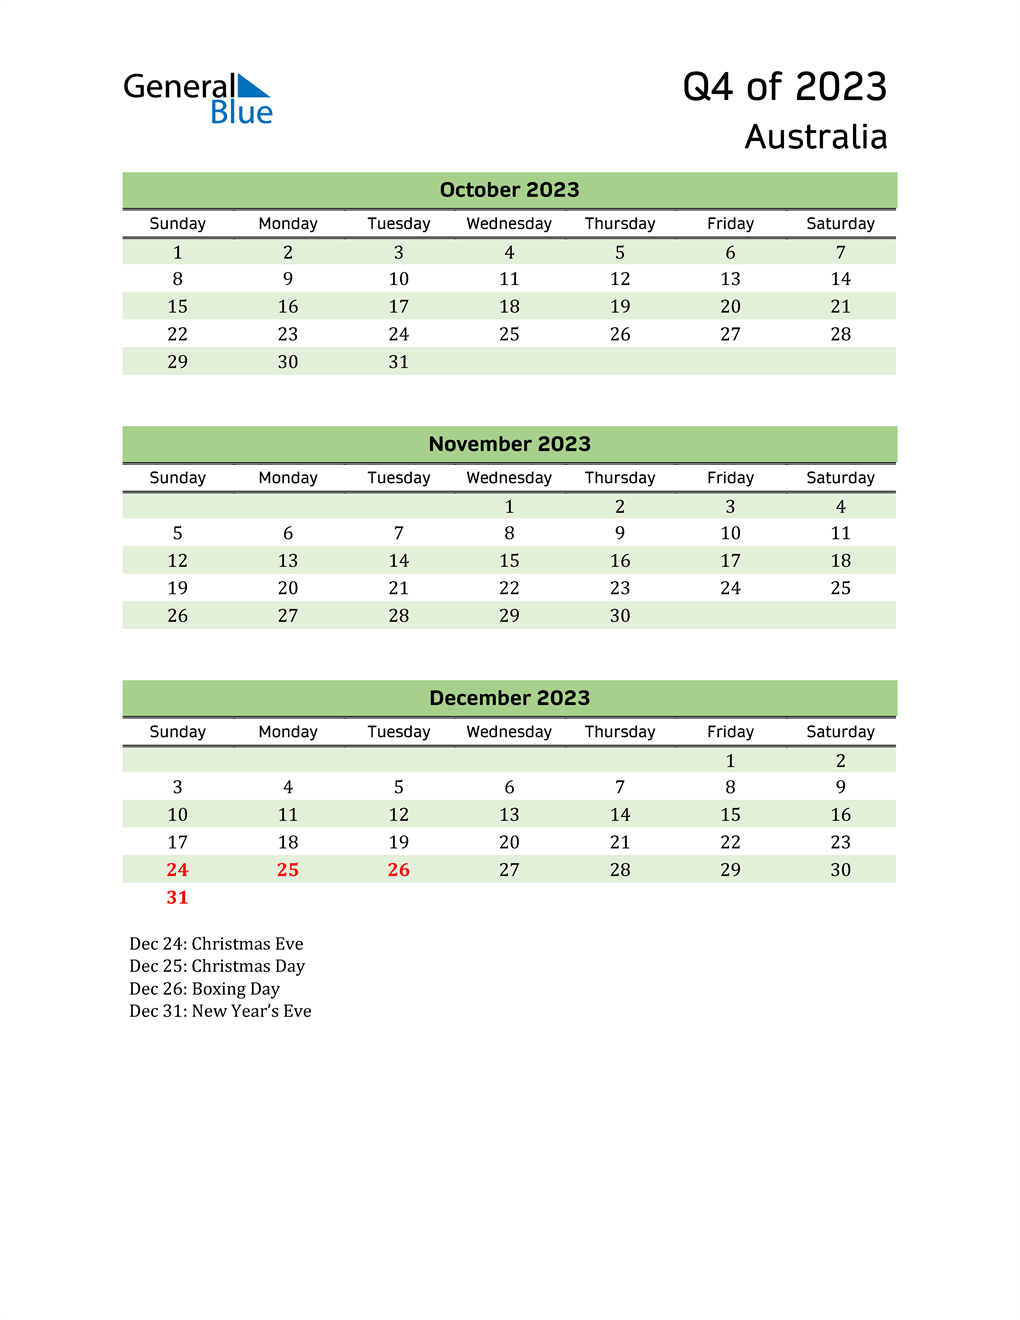 Q4 2023 Quarterly Calendar with Australia Holidays